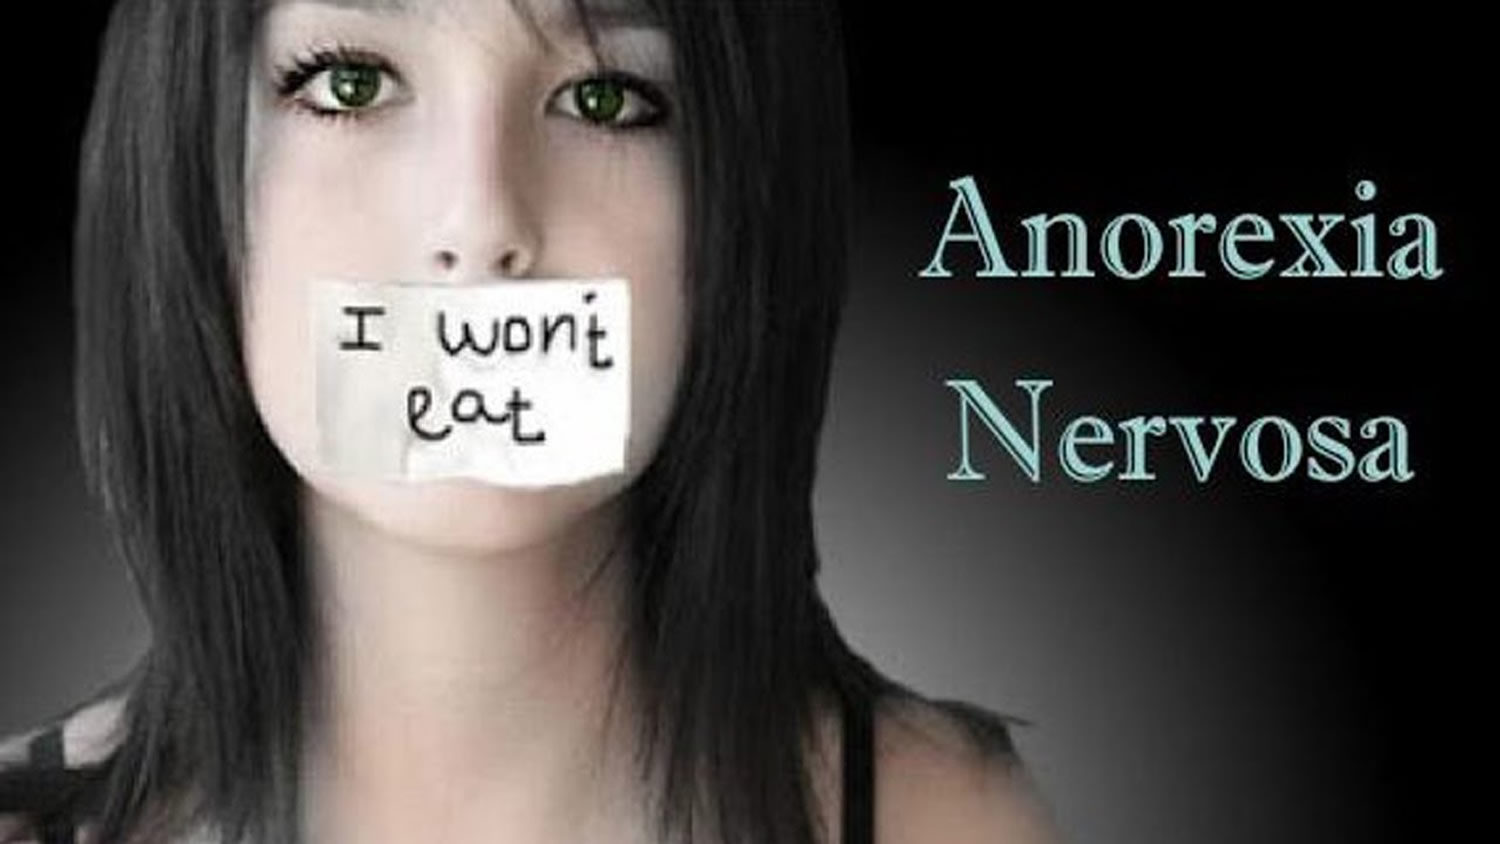 anorexia nervosa uk